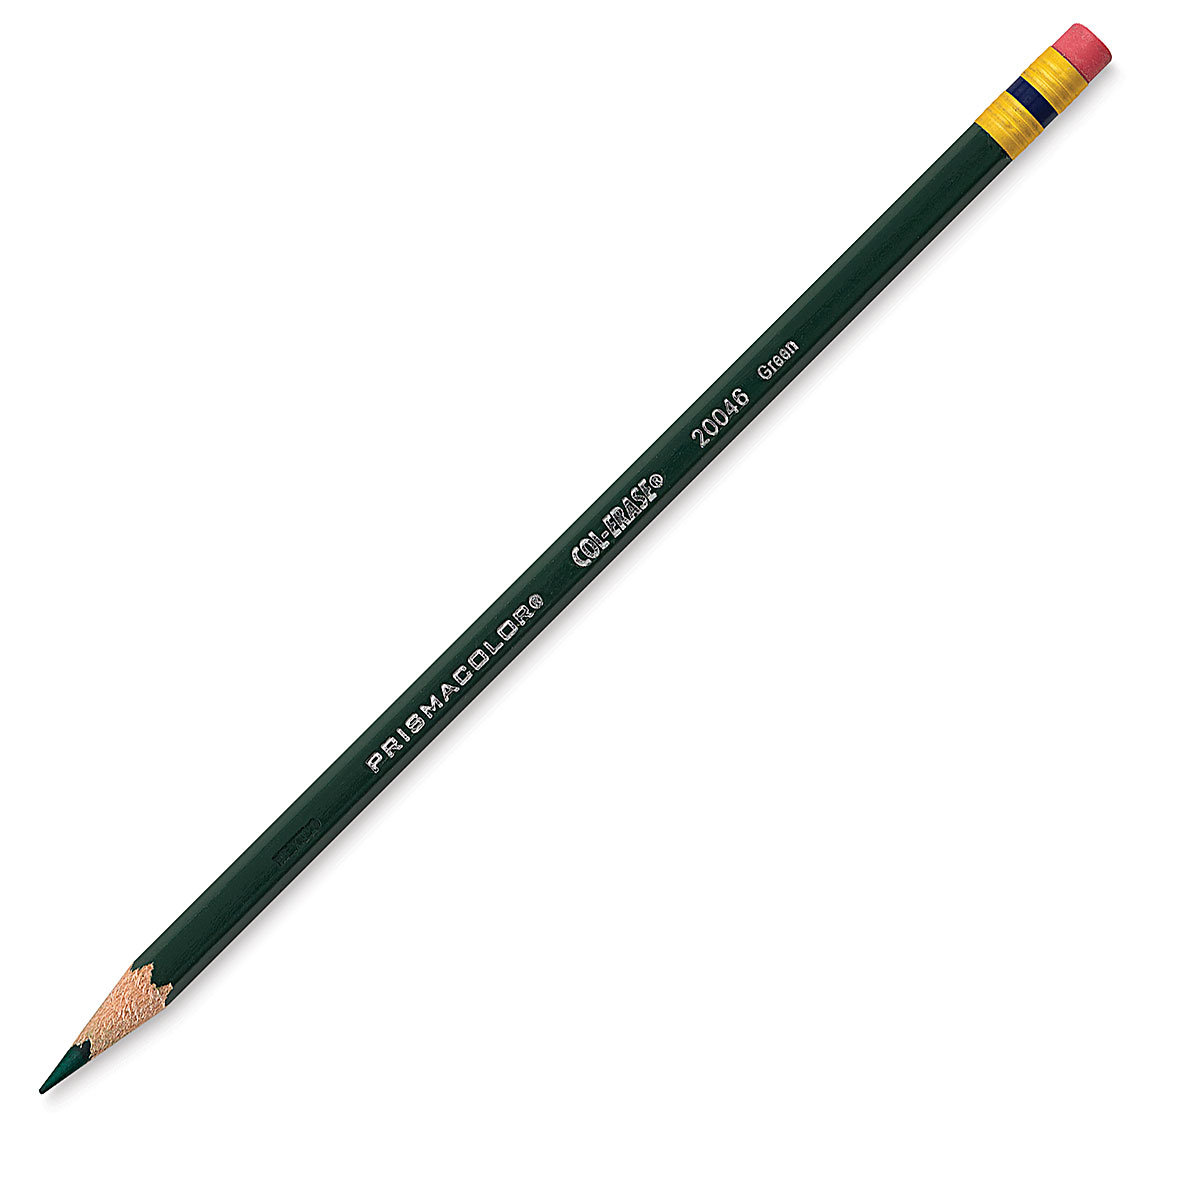 Prismacolor Col-erase Erasable Colored Pencils Set of 12 Book